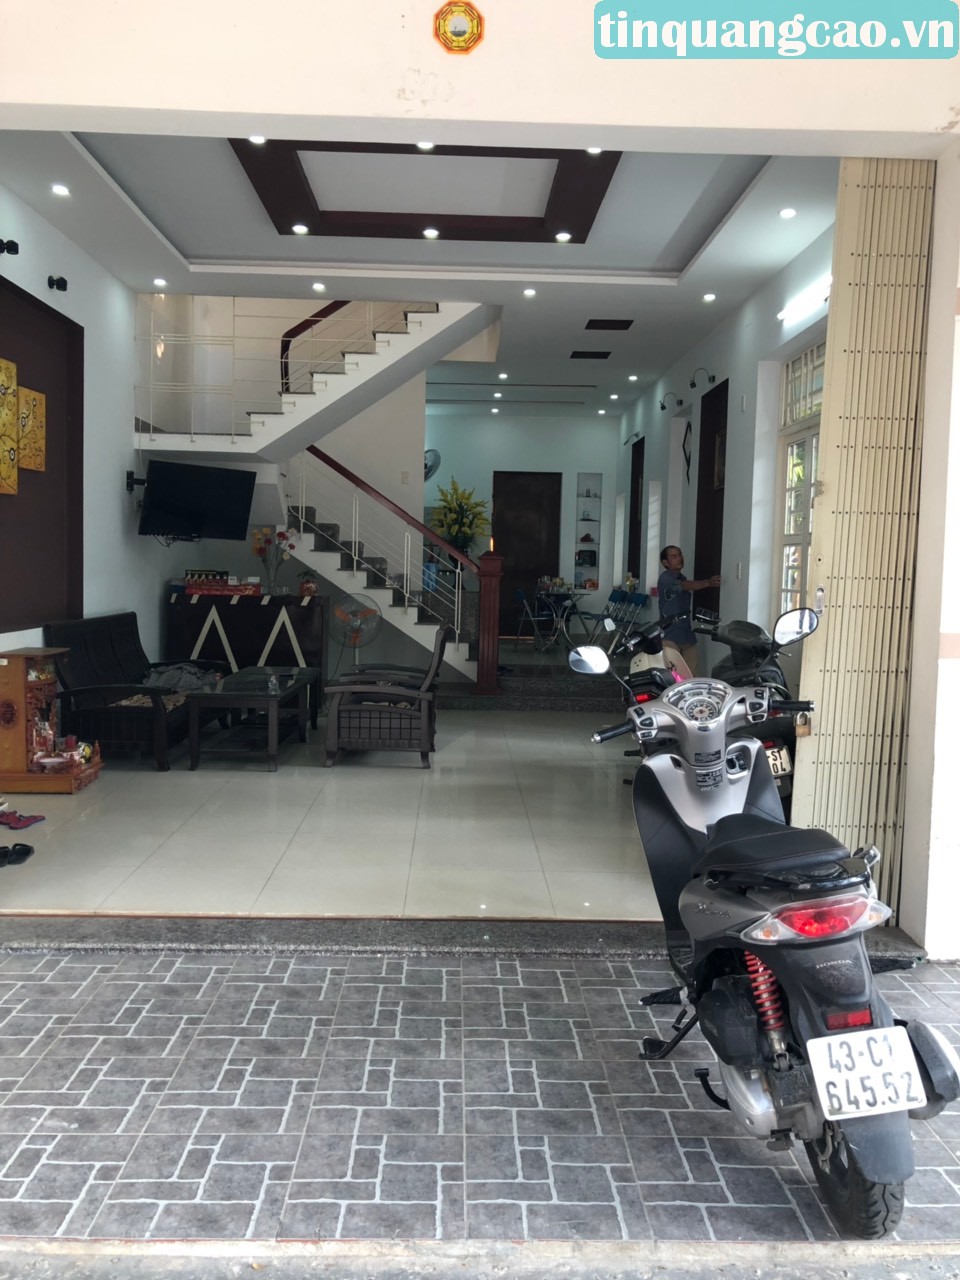 Chính chủ bán nhà 2 mặt tiền ngã tư Mẹ Thứ và Nguyễn Bảo, đường 7.5m và 5.5m